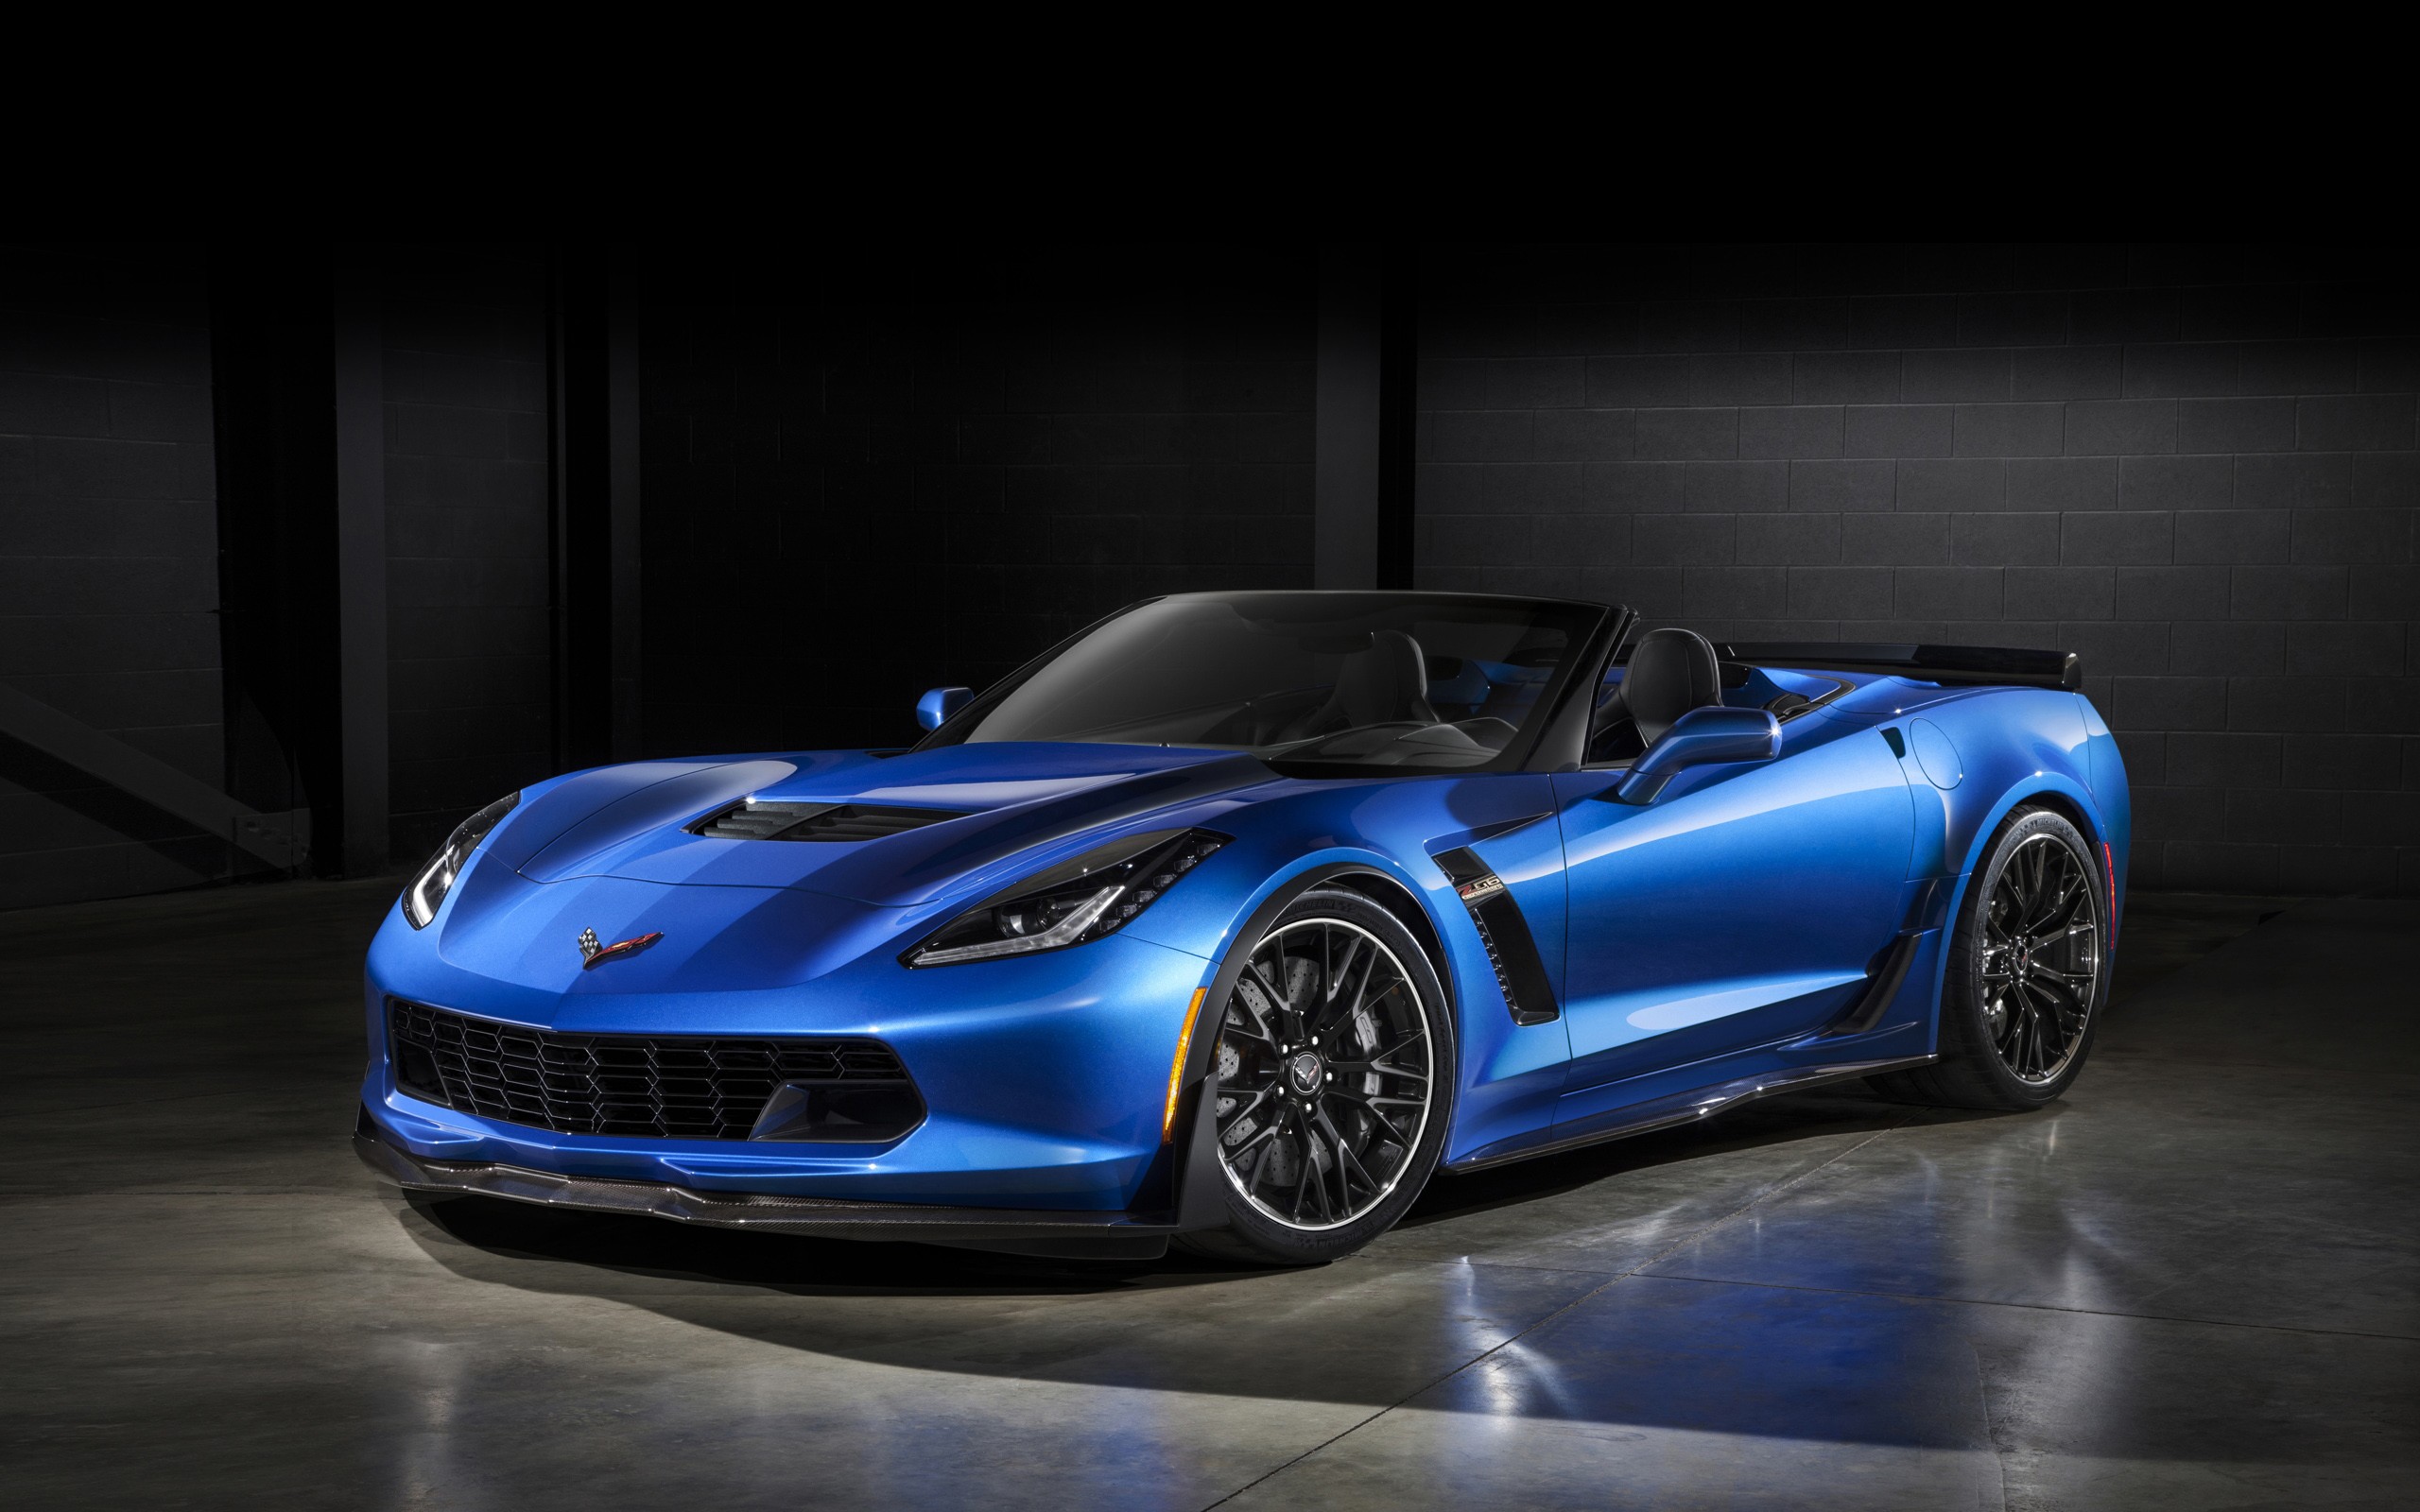 免费照片暗室中的蓝色雪佛兰 Corvette Z06。